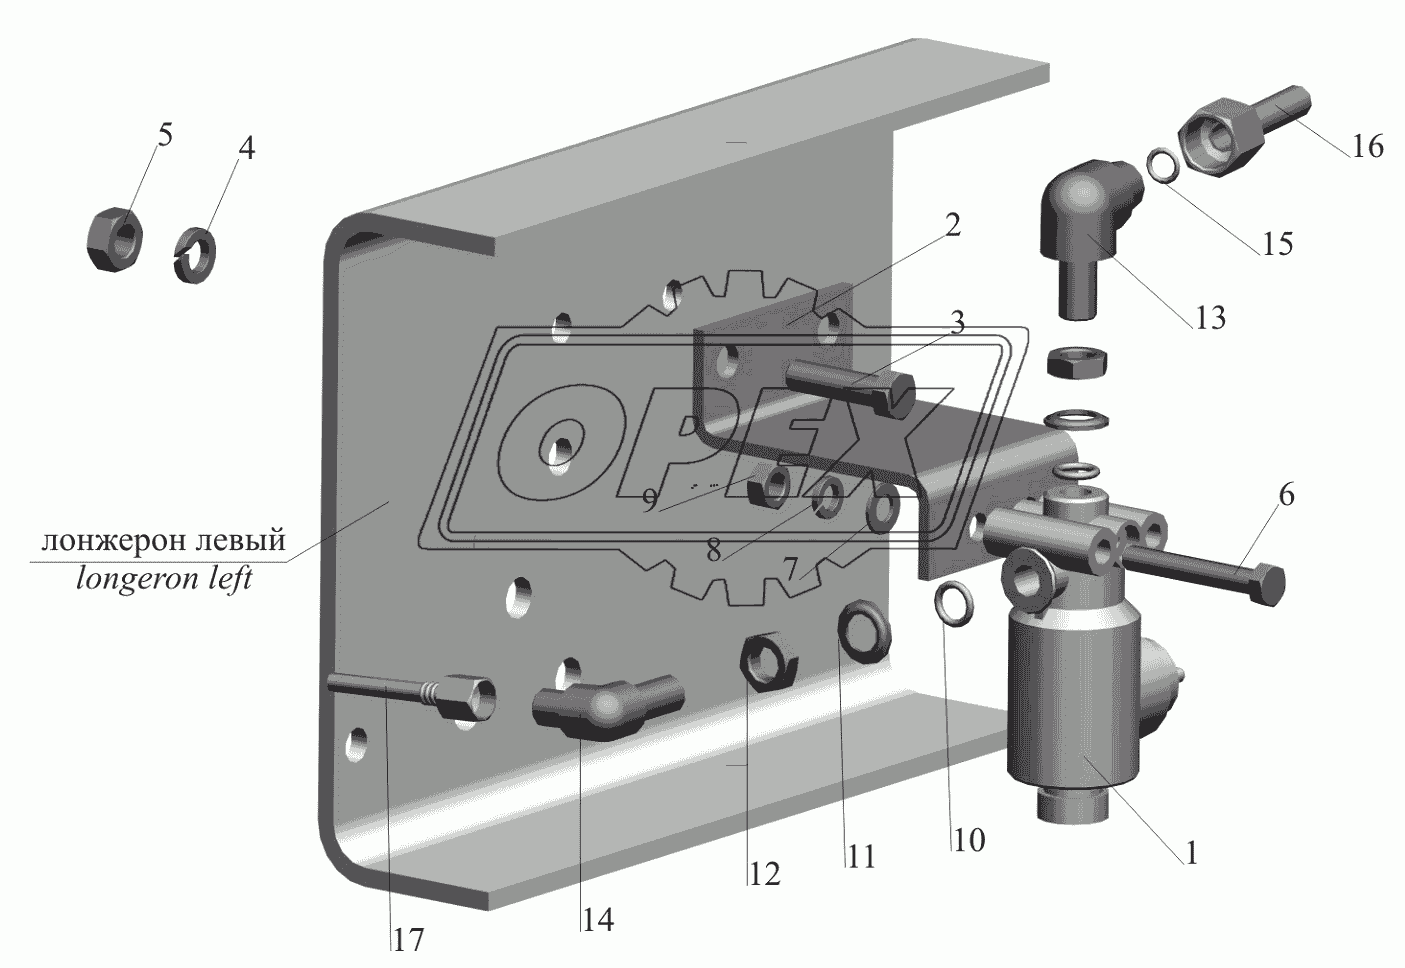 Установка тормозного клапана ASR и присоединительной арматуры